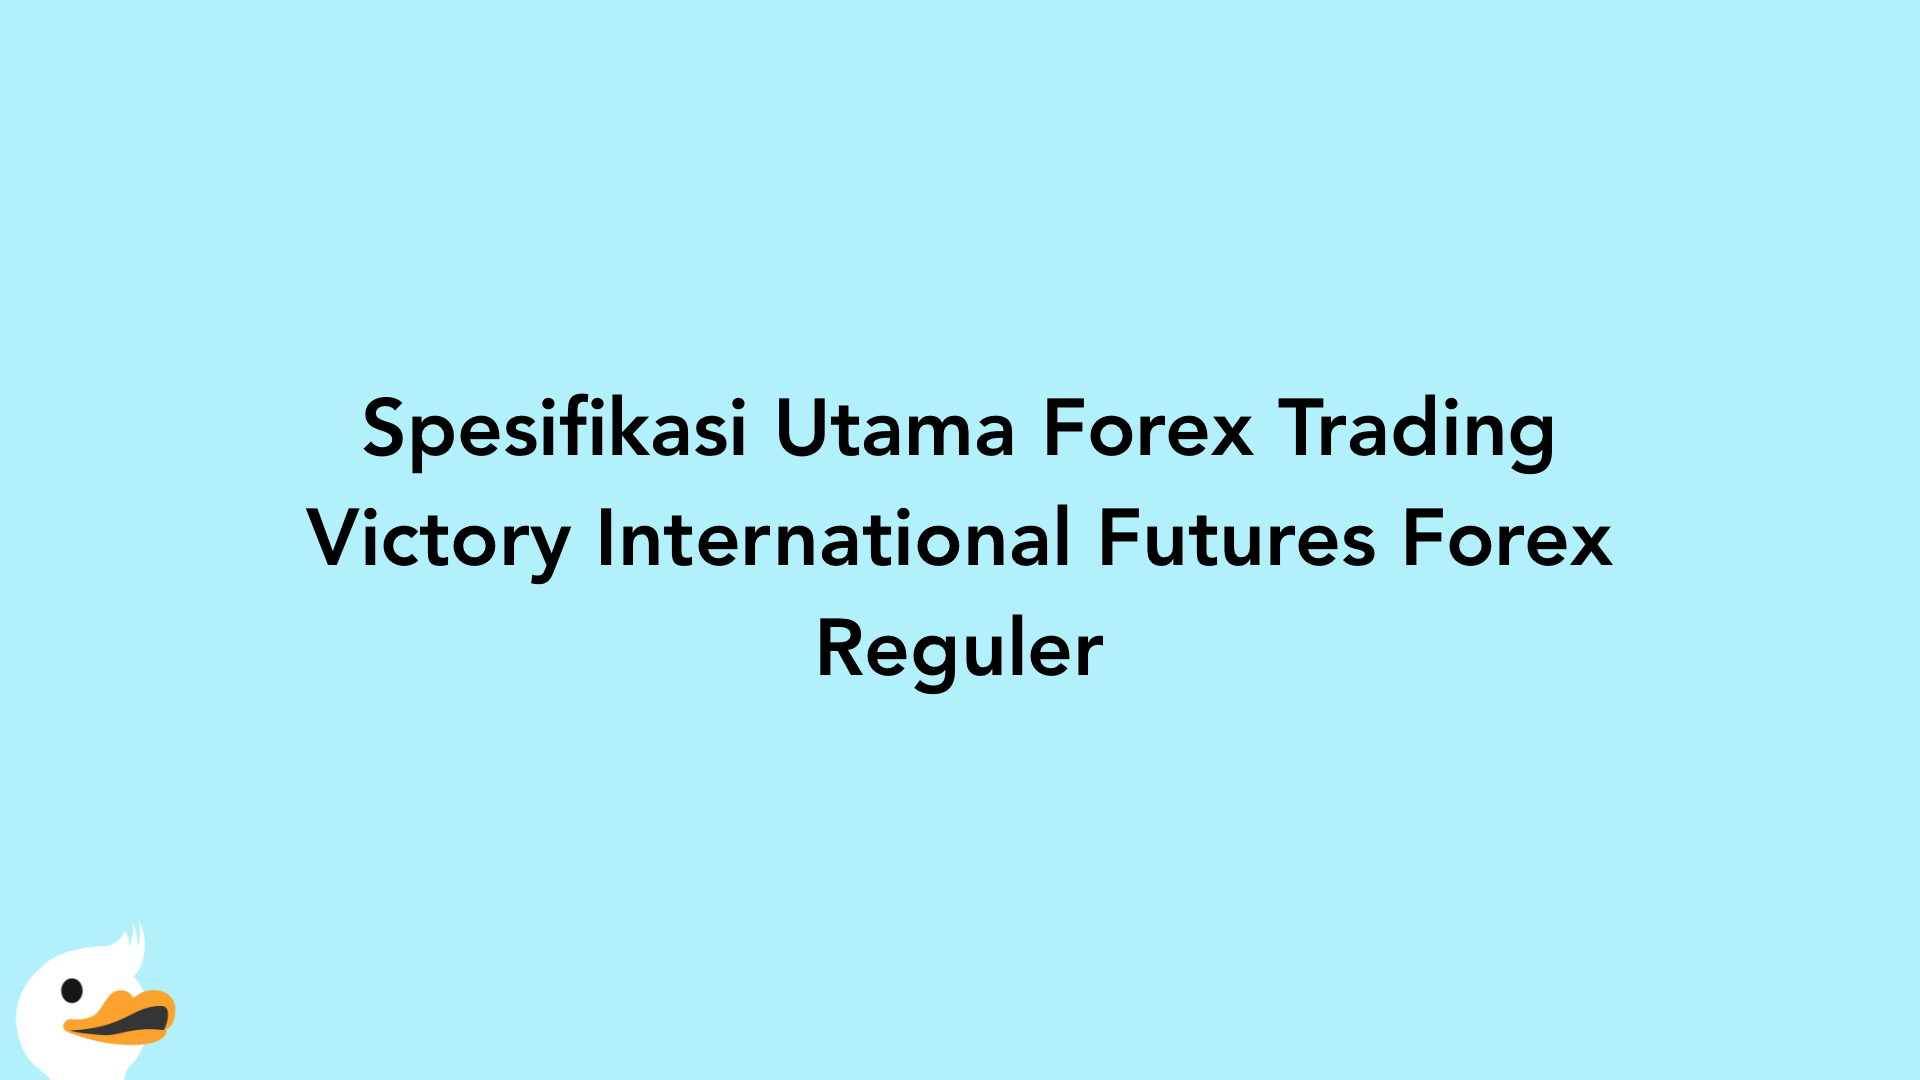 Spesifikasi Utama Forex Trading Victory International Futures Forex Reguler